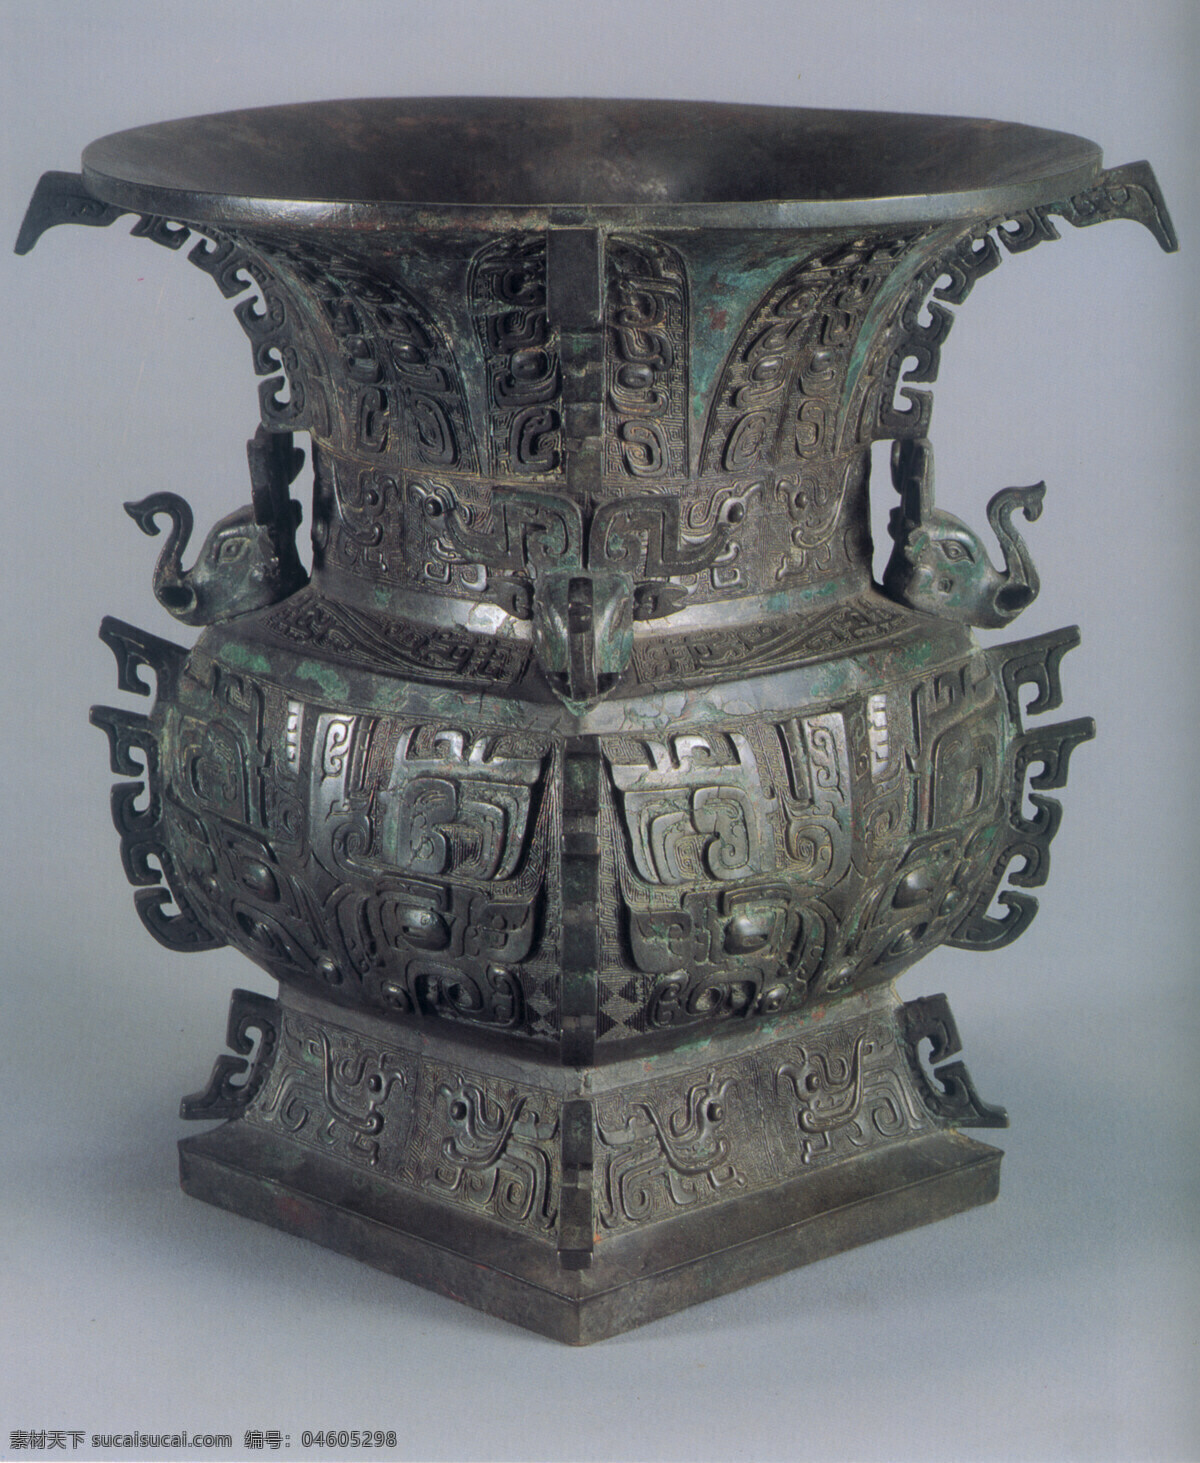 青铜器图片 传统 中国元素 青铜器 古董 工艺品 中国 古典 艺术 篇 文化艺术 传统文化